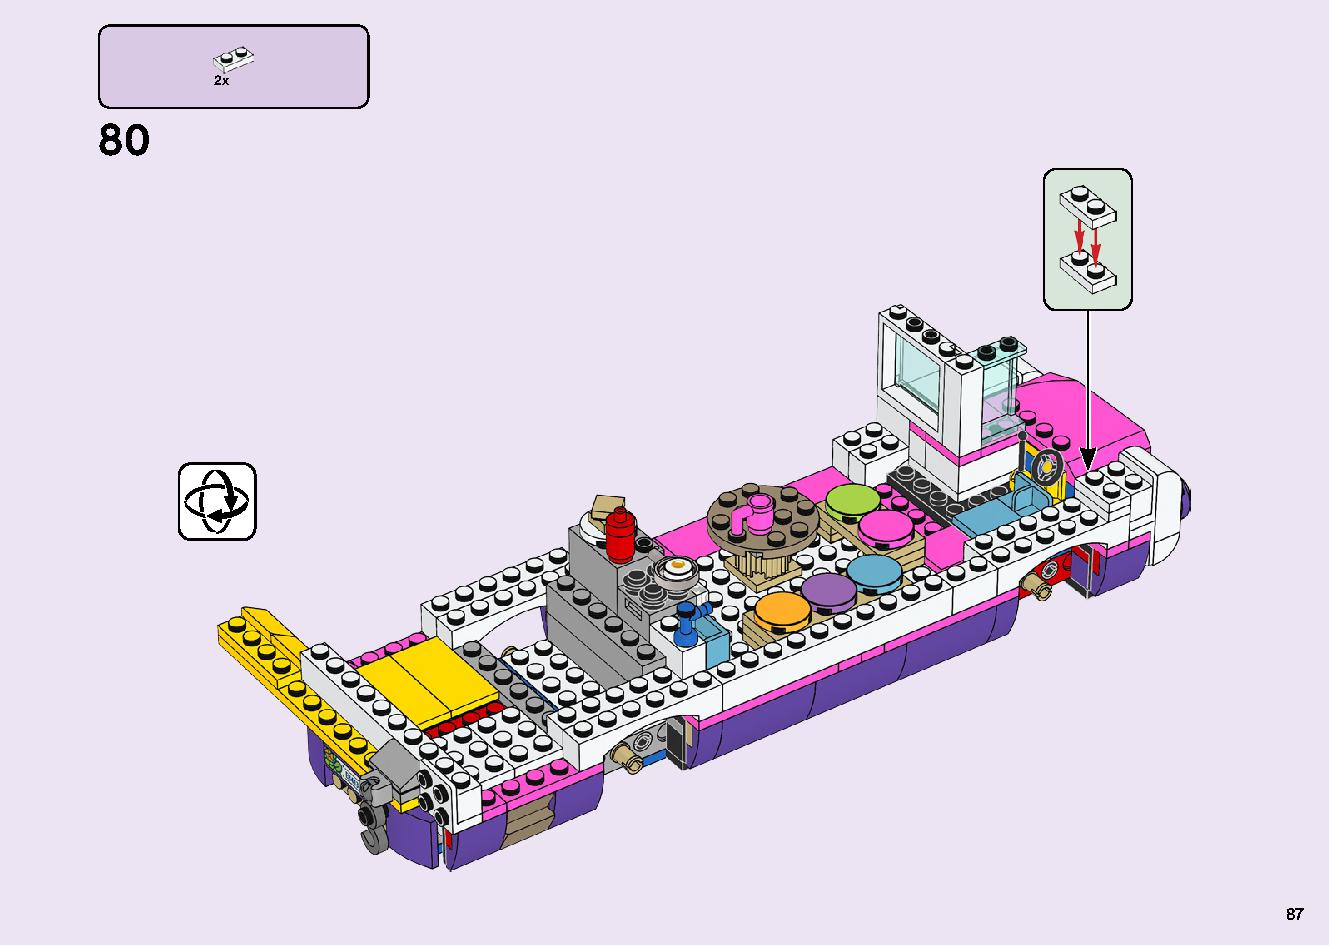 フレンズのうきうきハッピー・バス 41395 レゴの商品情報 レゴの説明書・組立方法 87 page